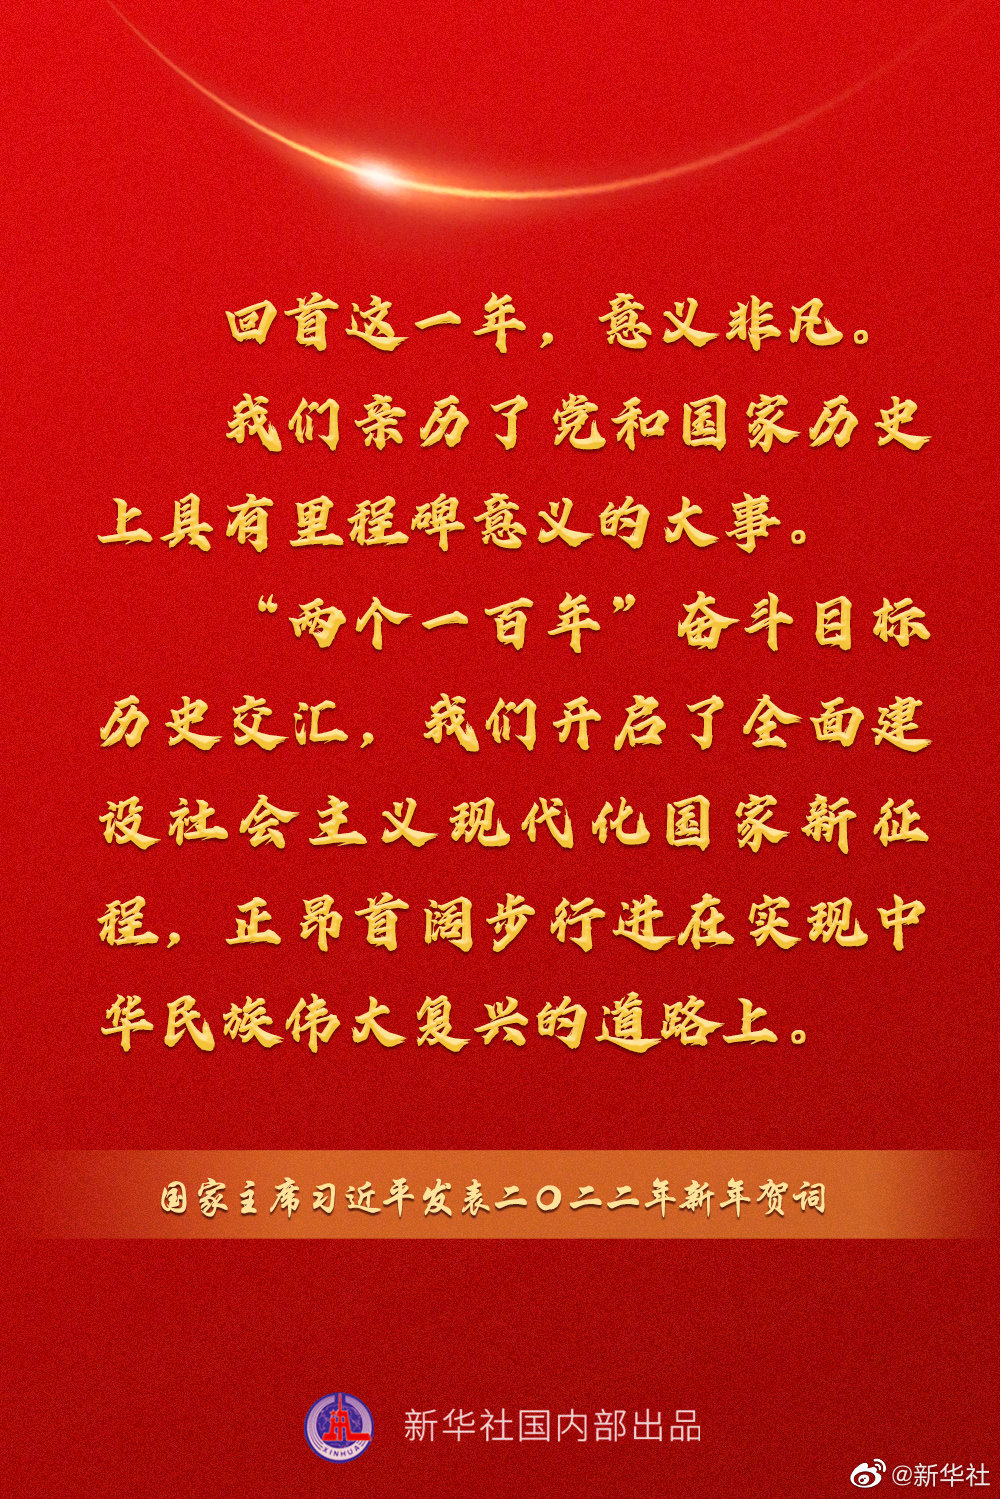 国家主席习近平发表二 二二年新年贺词 一起来看金句